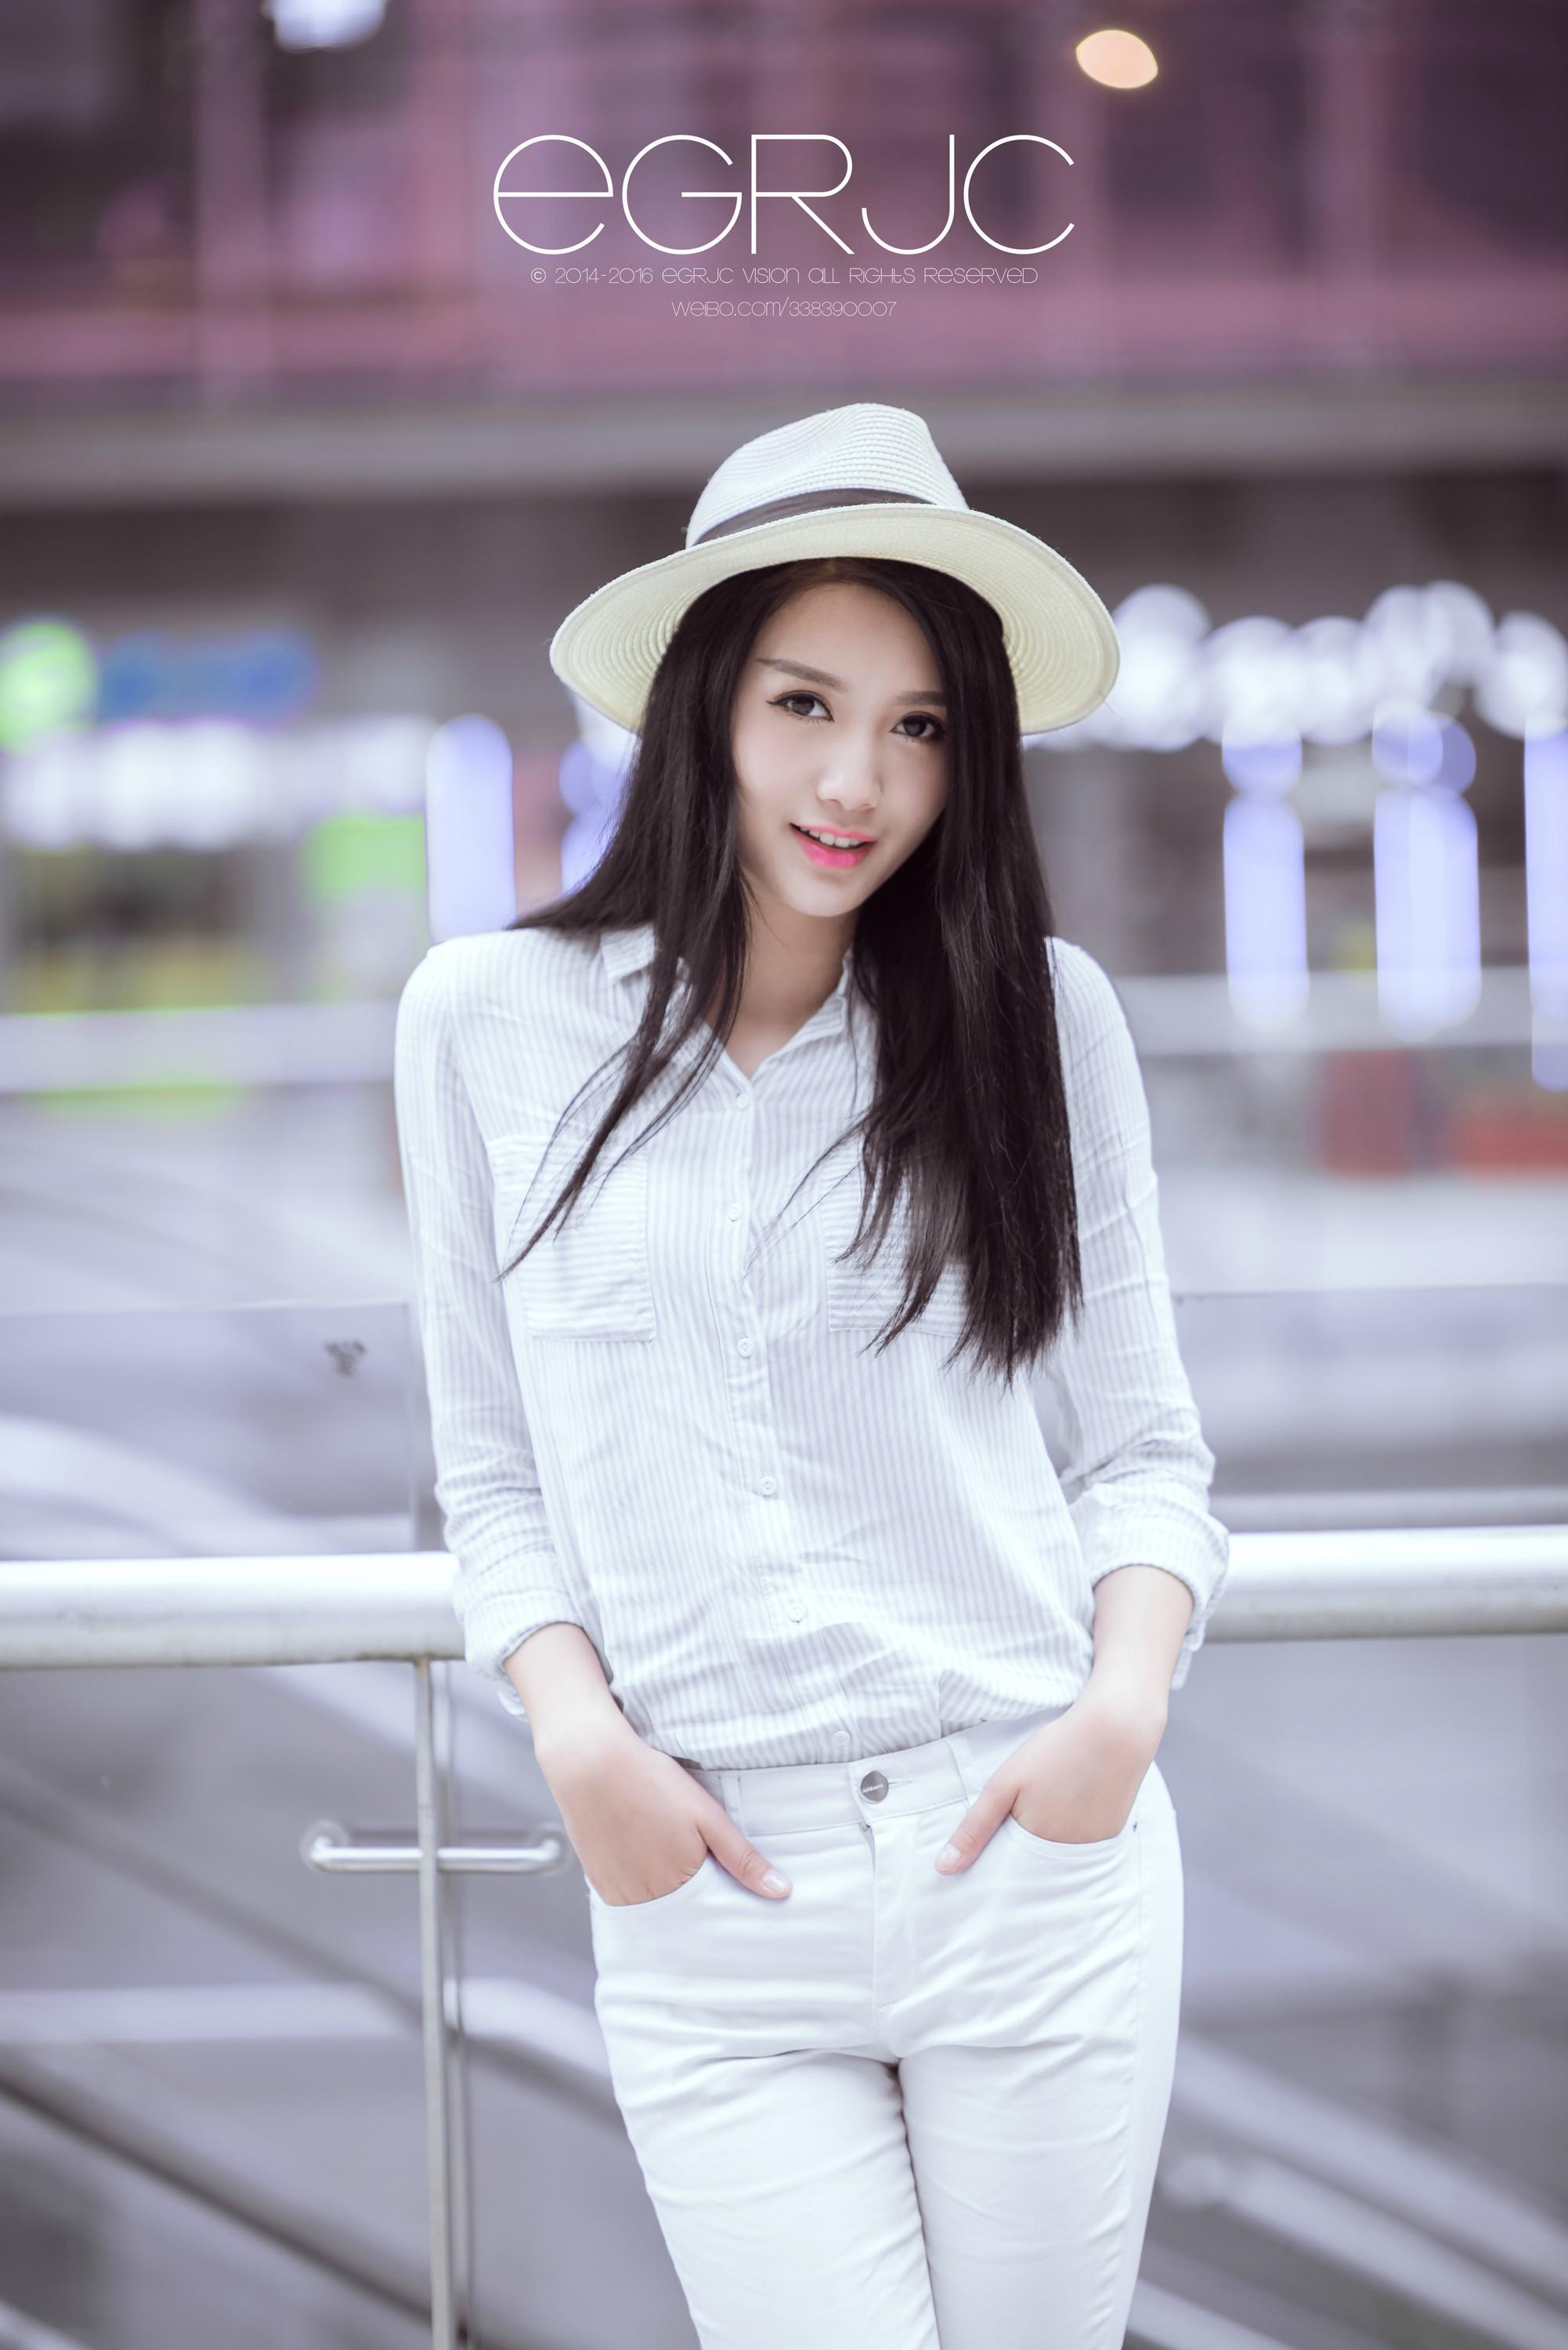 微博女神范 清新软妹纸 重庆模特「街拍 - 若晴」 出镜：@ambersky1008 白色衬衫与长裤,